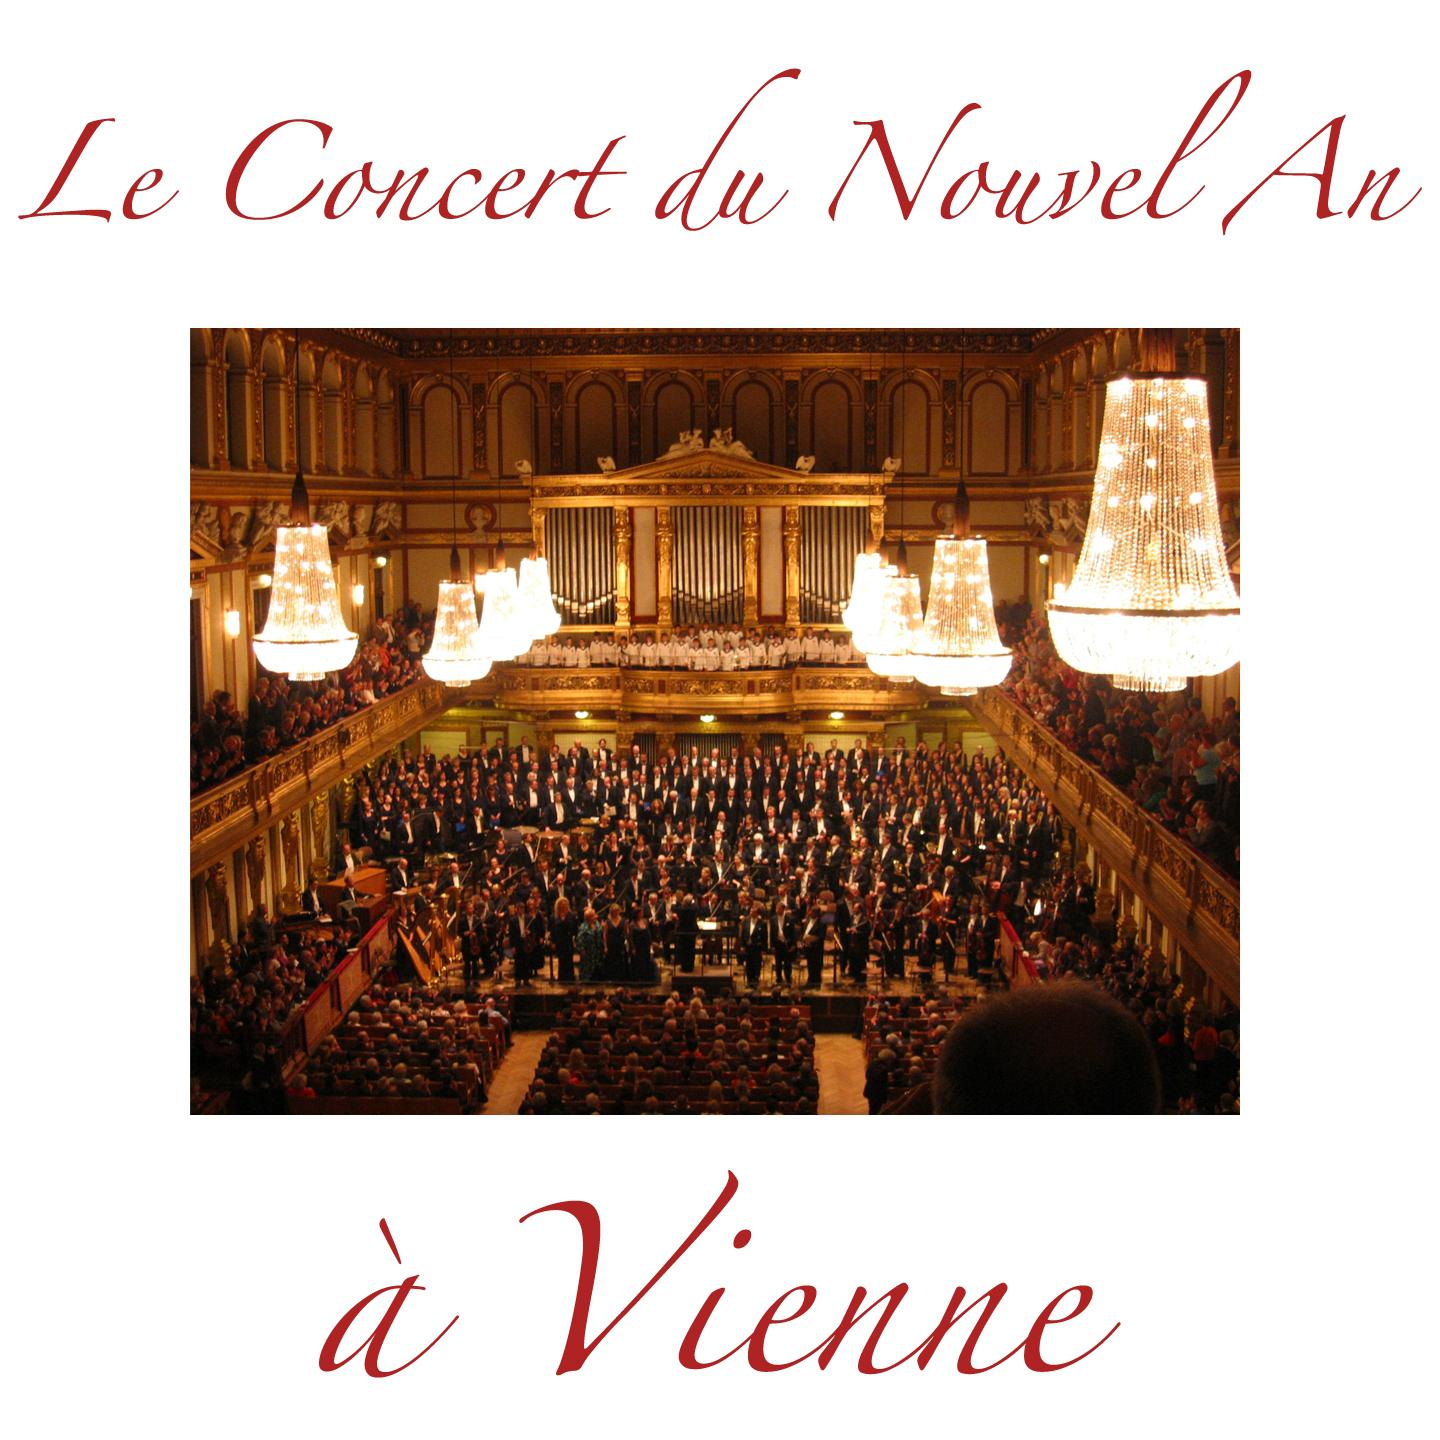 Le concert du nouvel an a Vienne